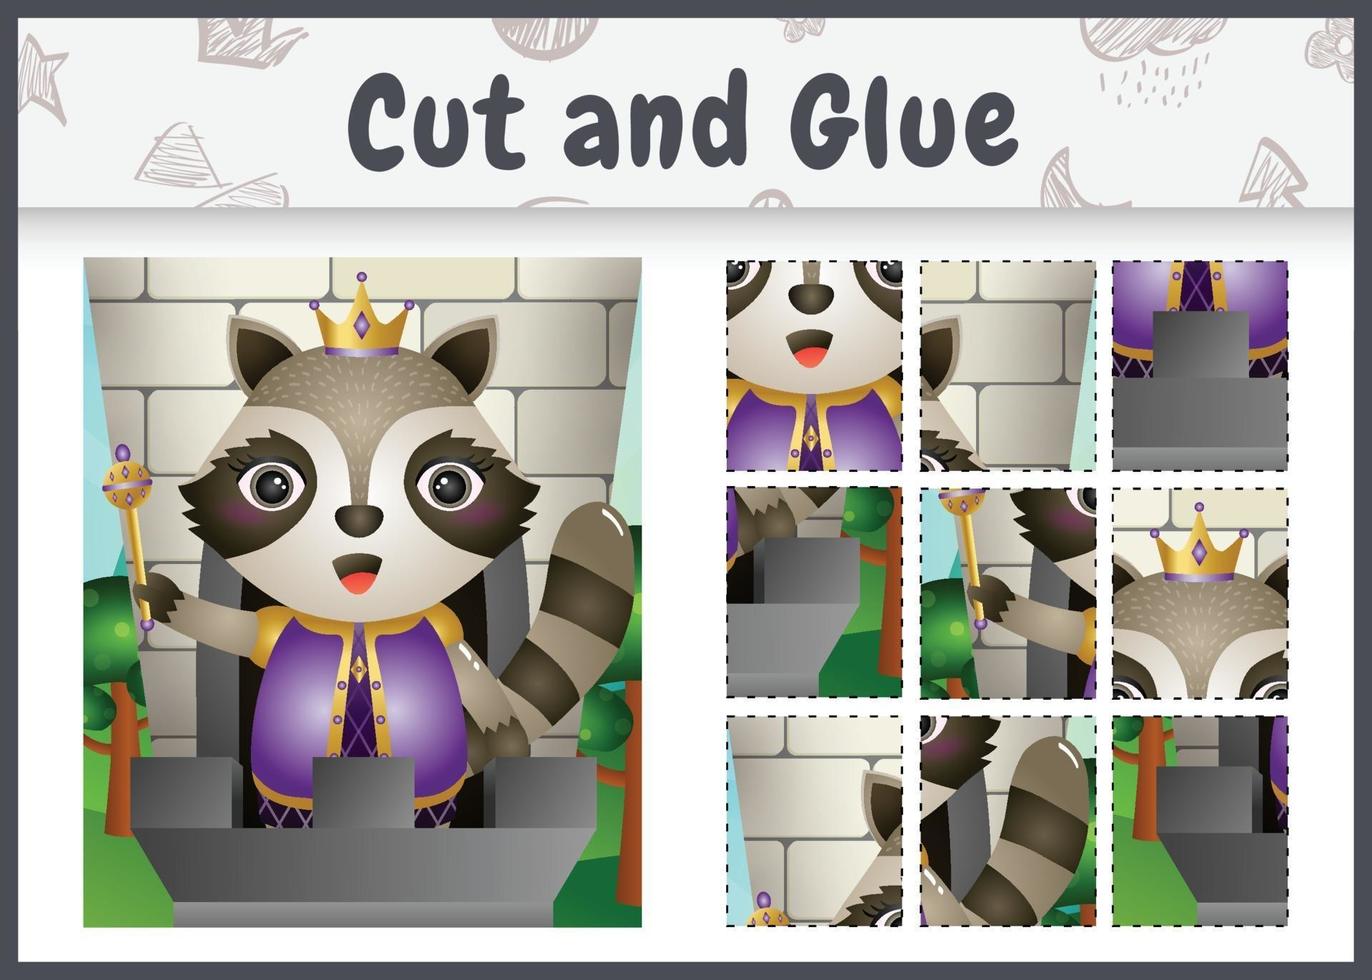 jeu de société pour enfants coupé et collé avec une illustration de personnage mignon roi raton laveur vecteur